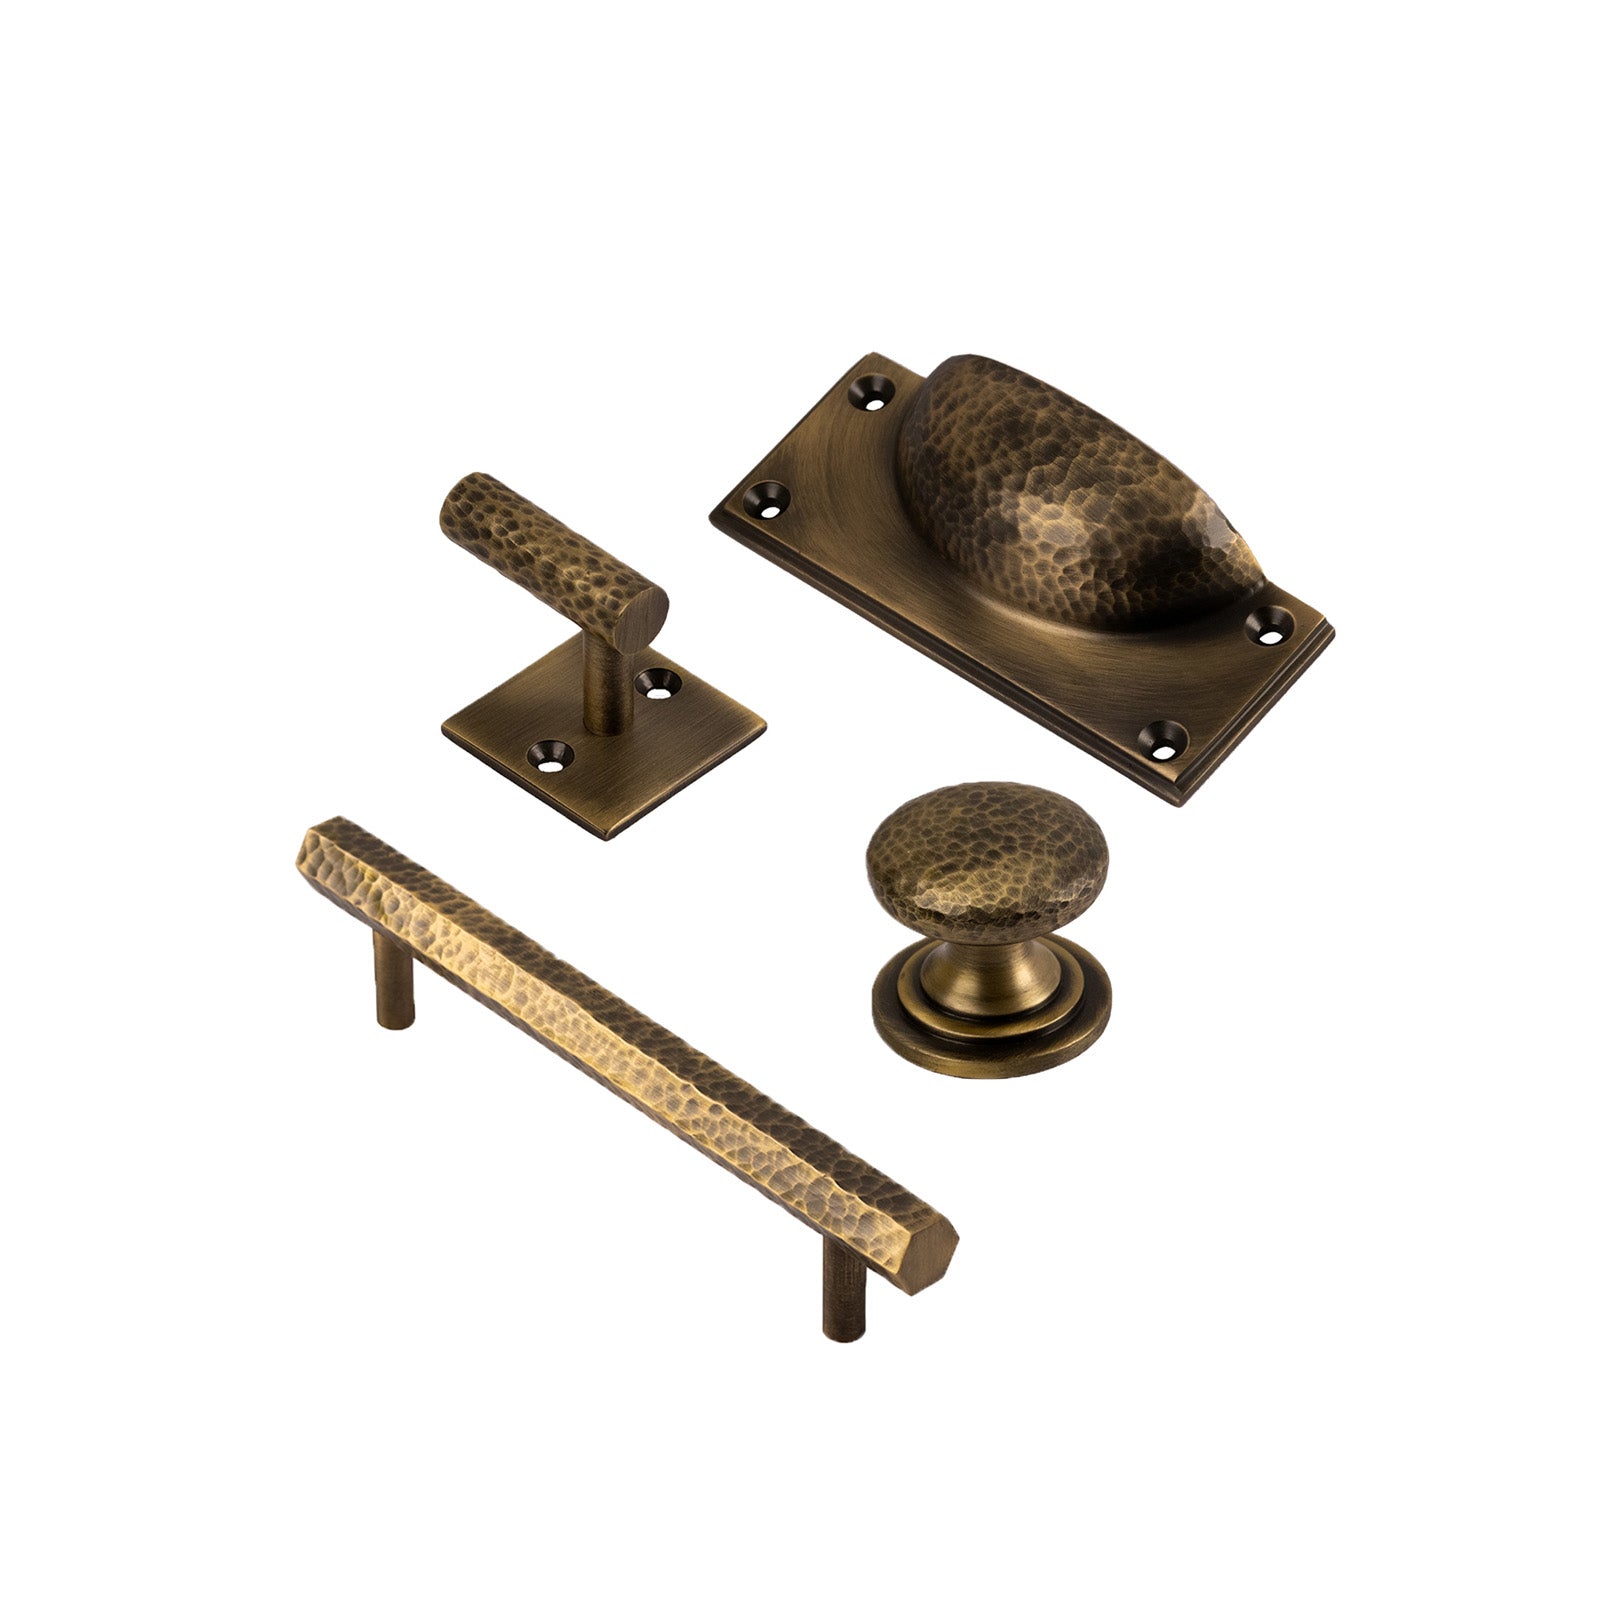 Heritage Brass Double Robe Hook (64mm Width), Satin Nickel - V1060-SN from  Door Handle Company